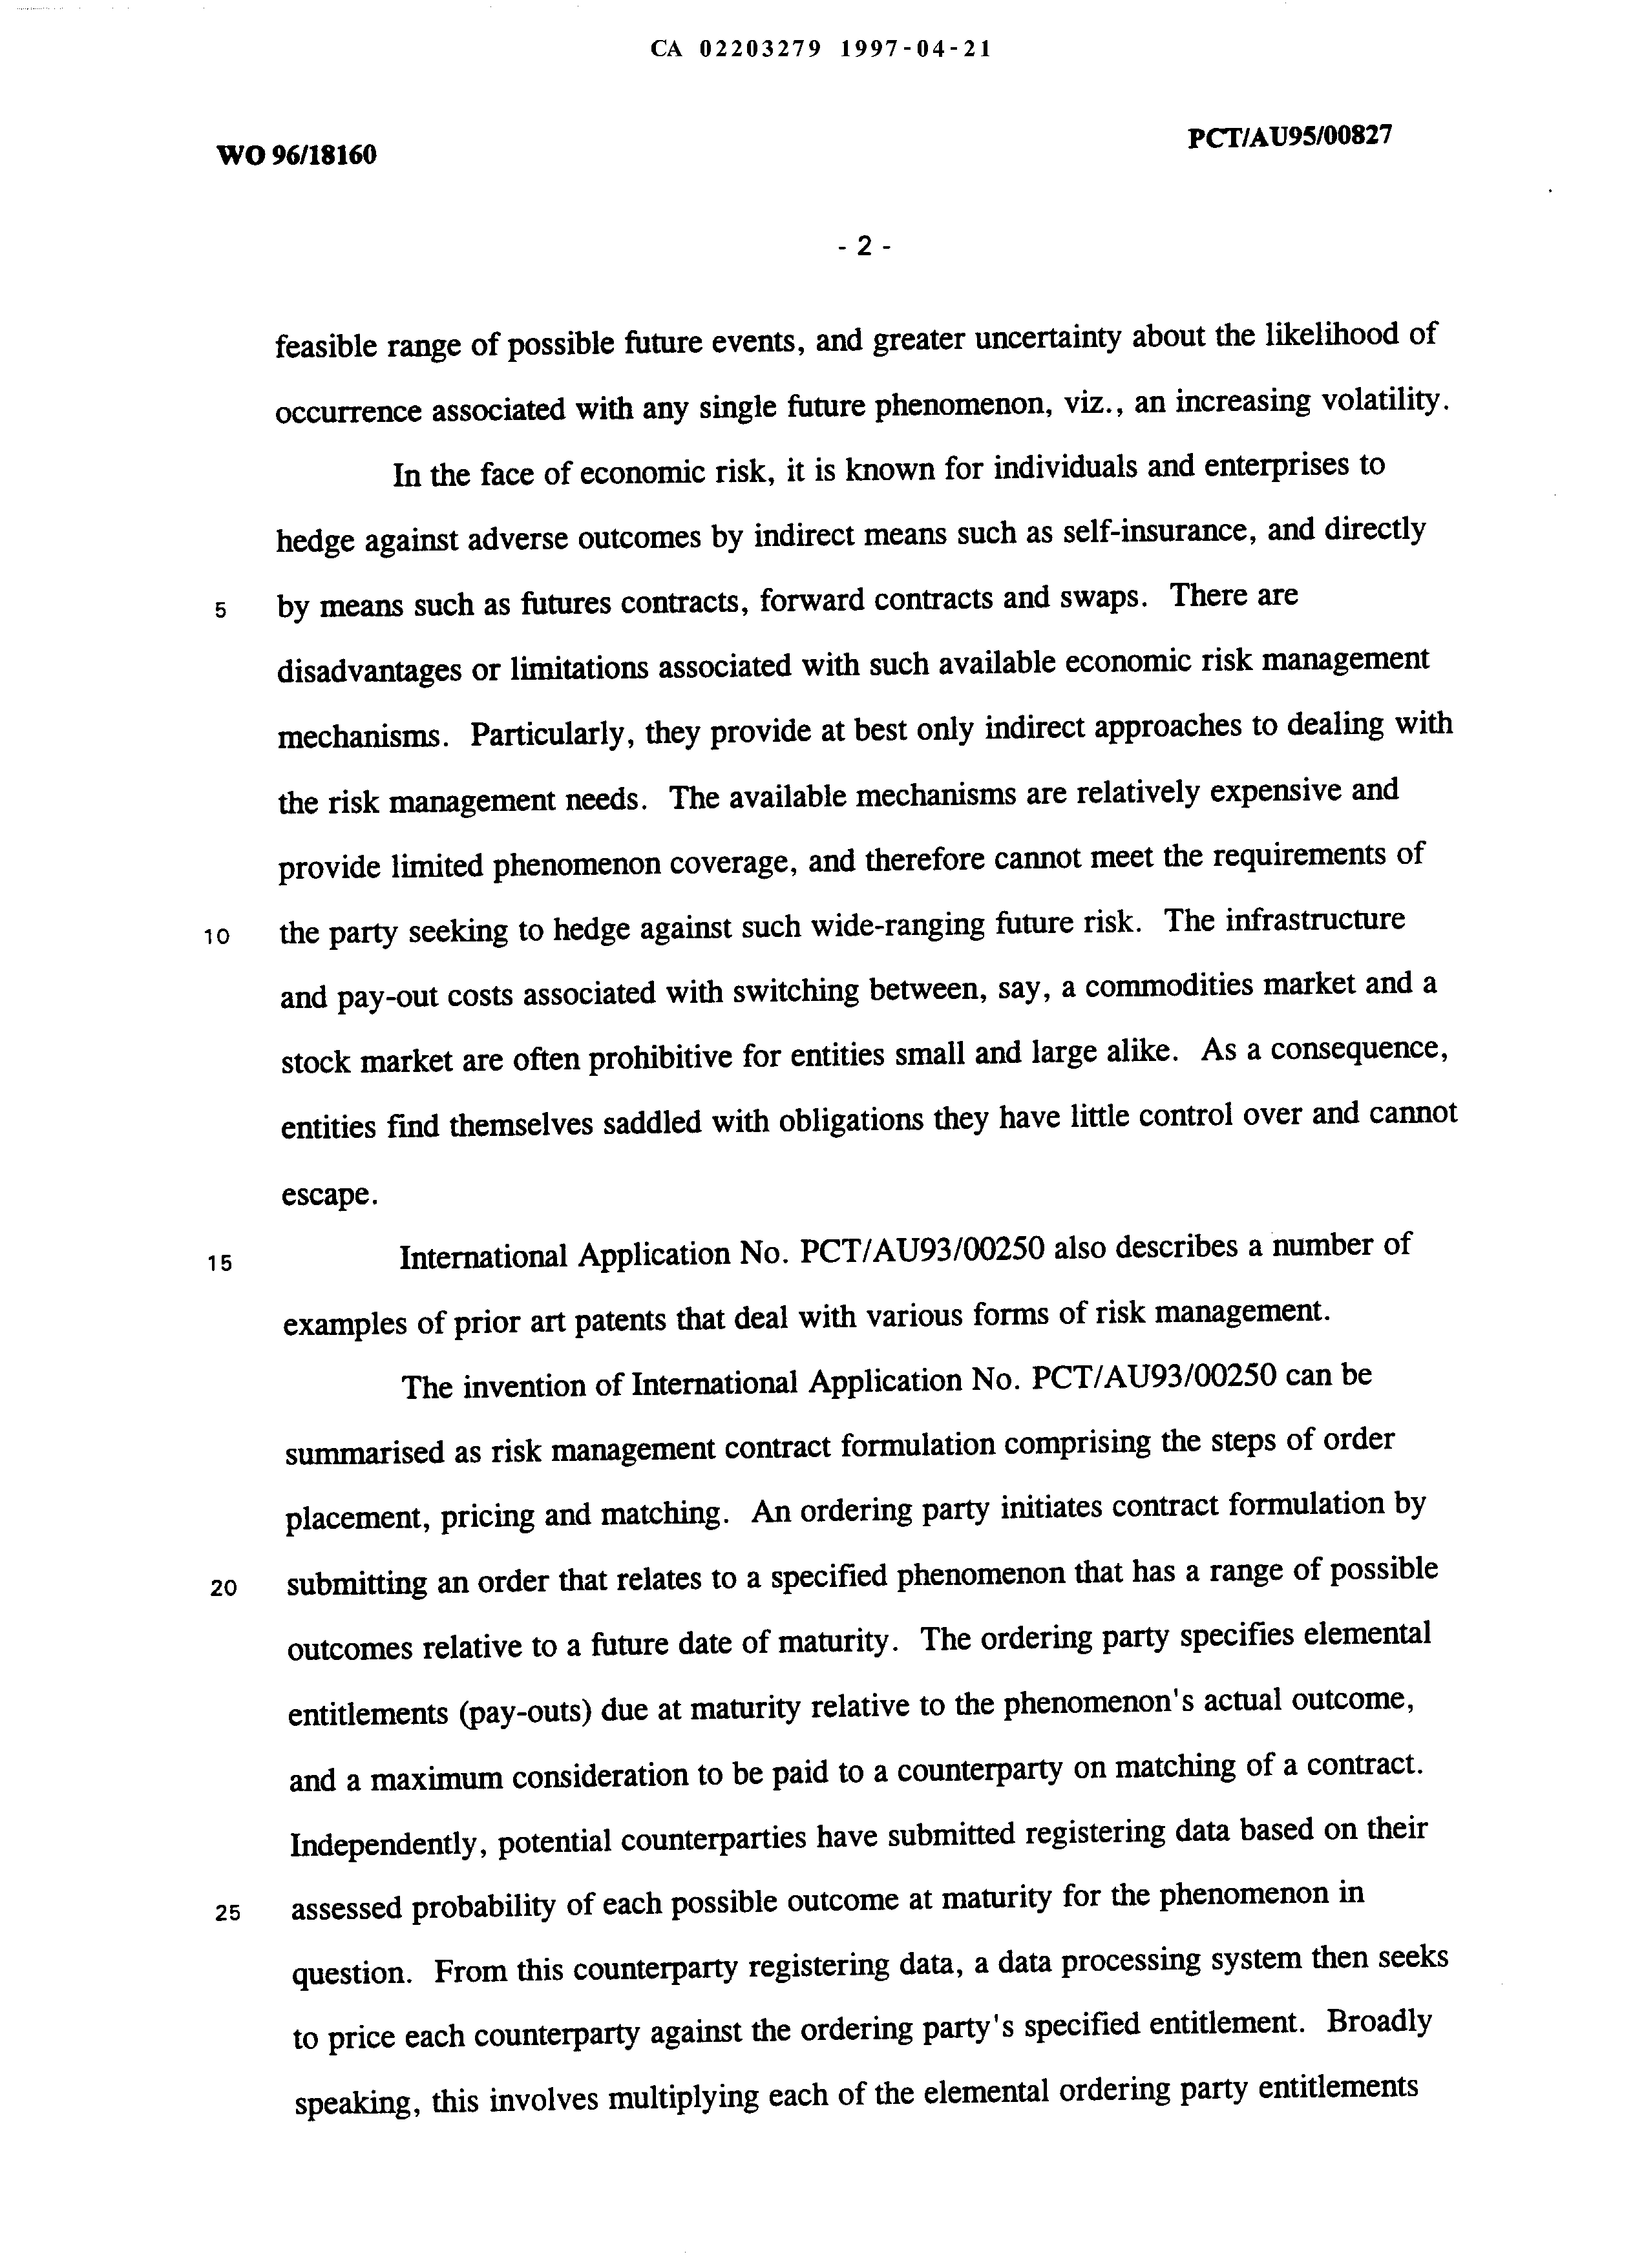 Canadian Patent Document 2203279. Description 20051226. Image 2 of 49